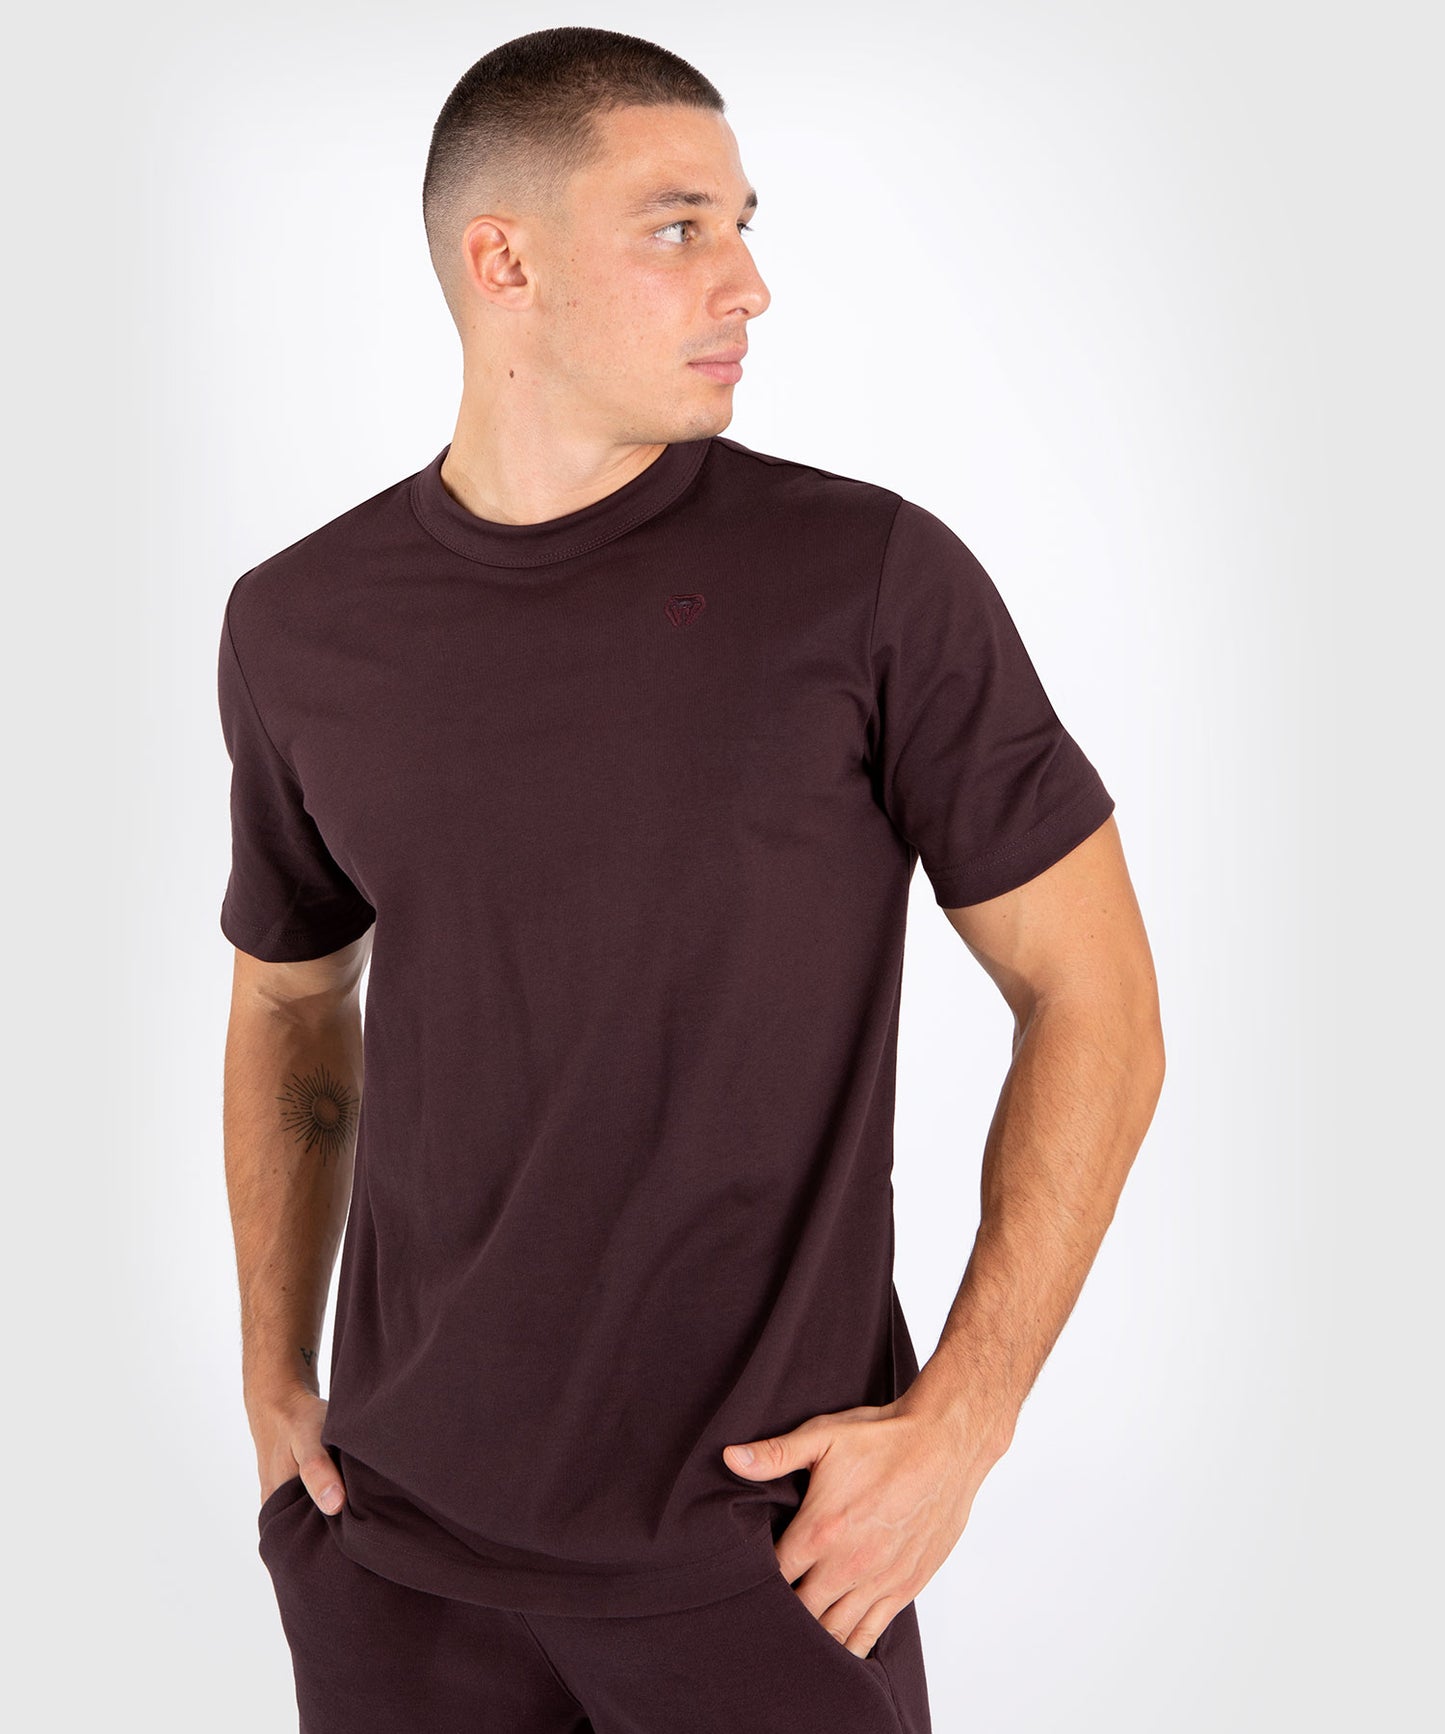 Camiseta marrón oscuro - Marrón Oscuro